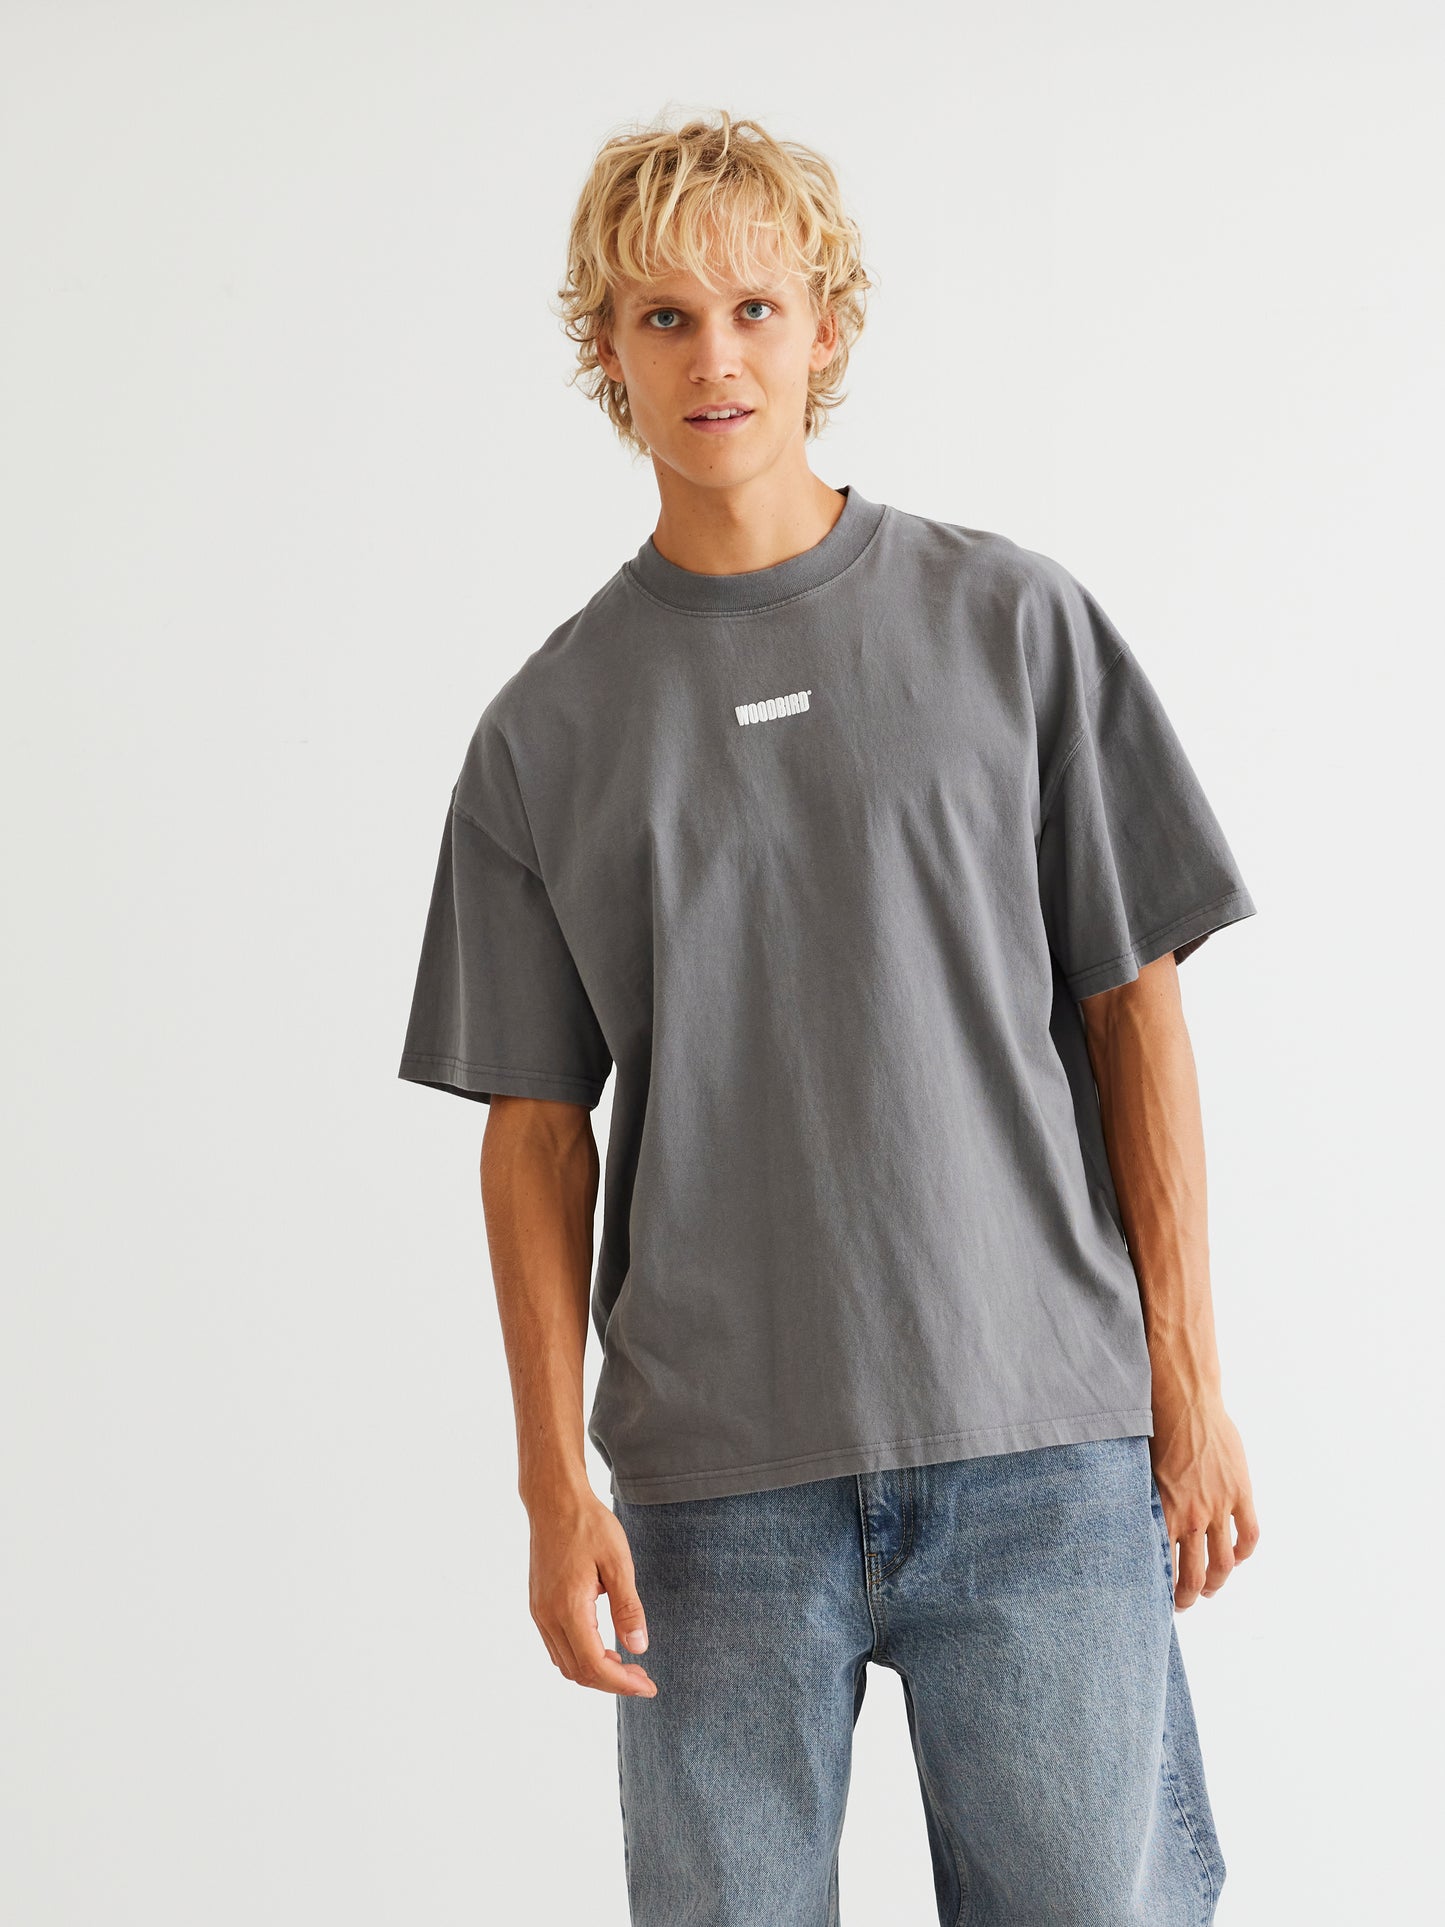 Woodbird WBBose Logo Tee T-Shirts Antra Grey